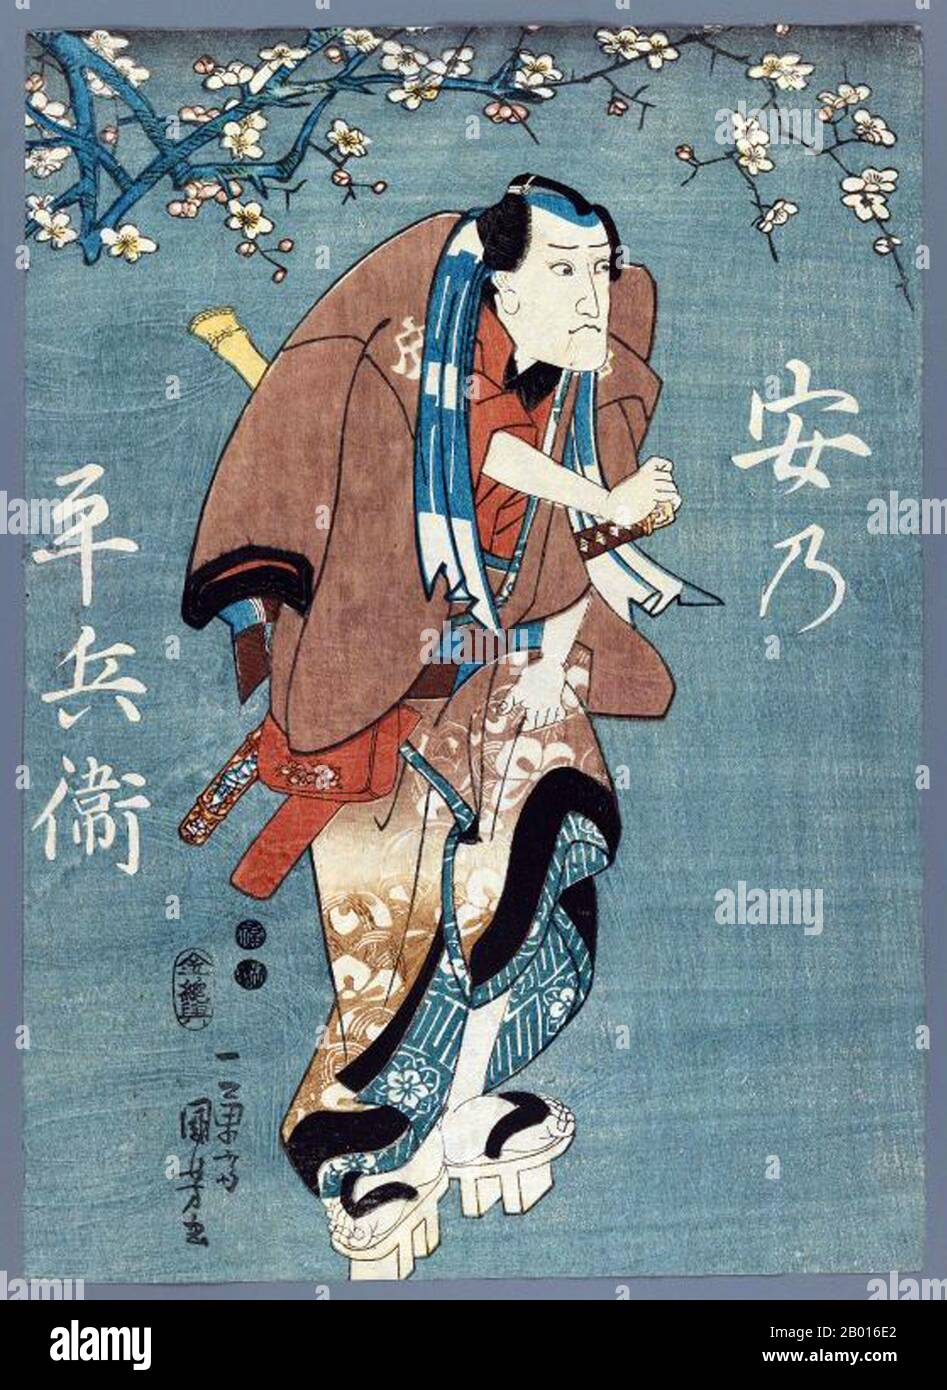 Japon: 'Ichikawa Kuzo II comme Yasuno Heibei'.Imprimé en blocs de bois Ukiyo-e par Utagawa Kuniyoshi (1er janvier 1798 - 14 avril 1861), ch.1847-1852.Utagawa Kuniyoshi a été l'un des derniers grands maîtres du style ukiyo-e japonais d'imprimés et de peinture de blocs de bois.Il est associé à l'école Utagawa.La gamme des sujets préférés de Kuniyoshi comprenait de nombreux genres : paysages, belles femmes, acteurs Kabuki, chats et animaux mythiques.Il est connu pour les représentations des batailles des samouraïs et des héros légendaires.Ses œuvres d'art ont été affectées par les influences occidentales dans la peinture et la caricature de paysage. Banque D'Images